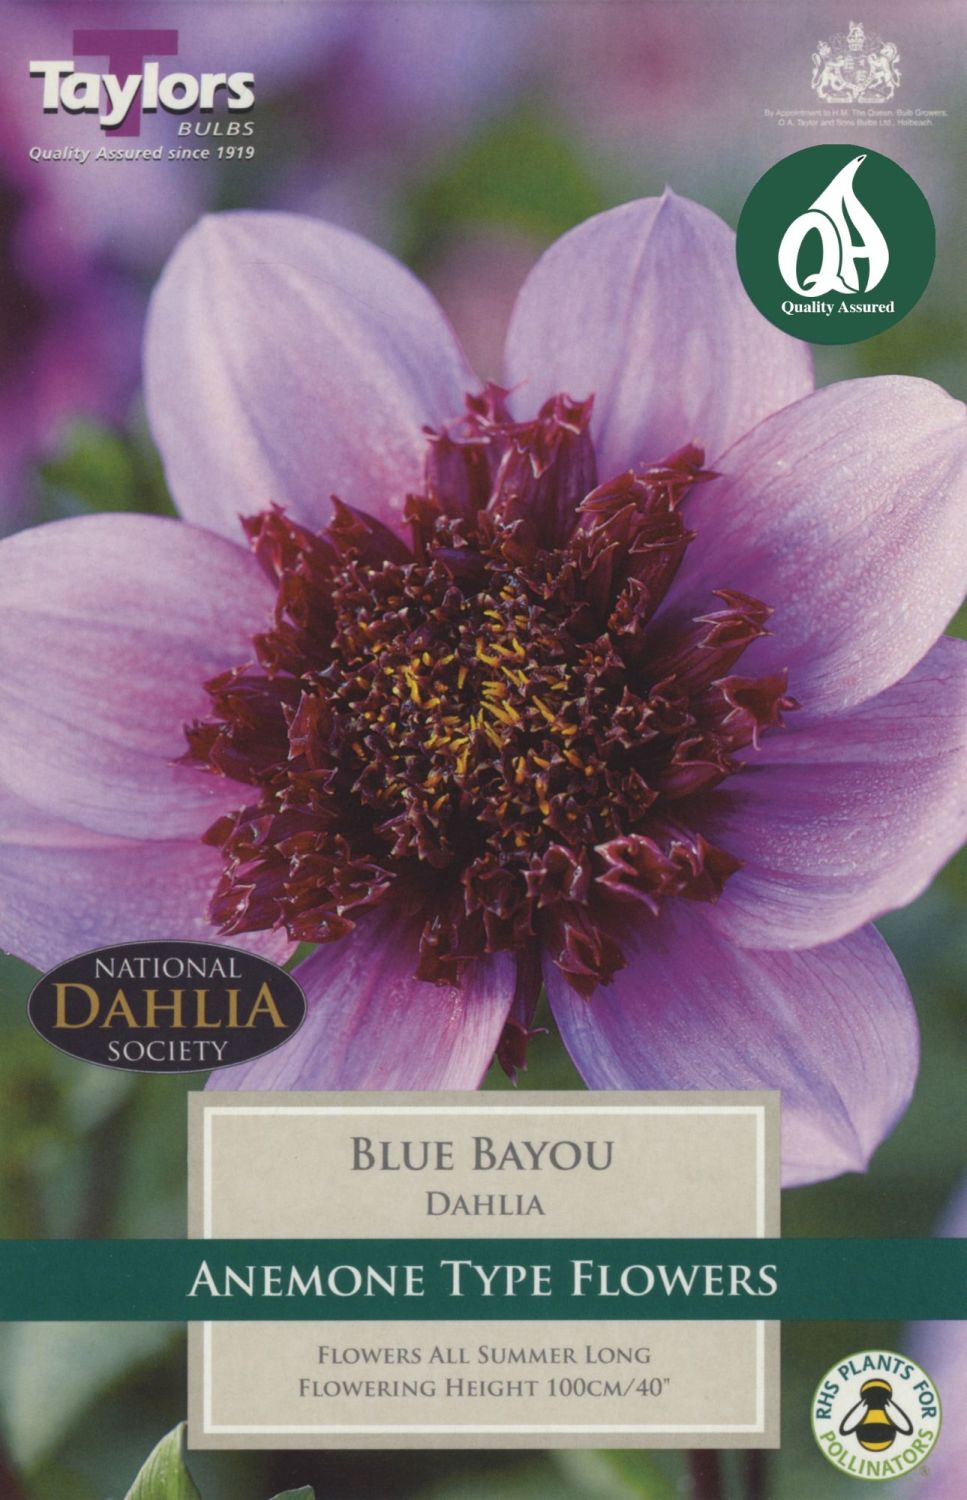 DAHLIA BLUE BAYOU